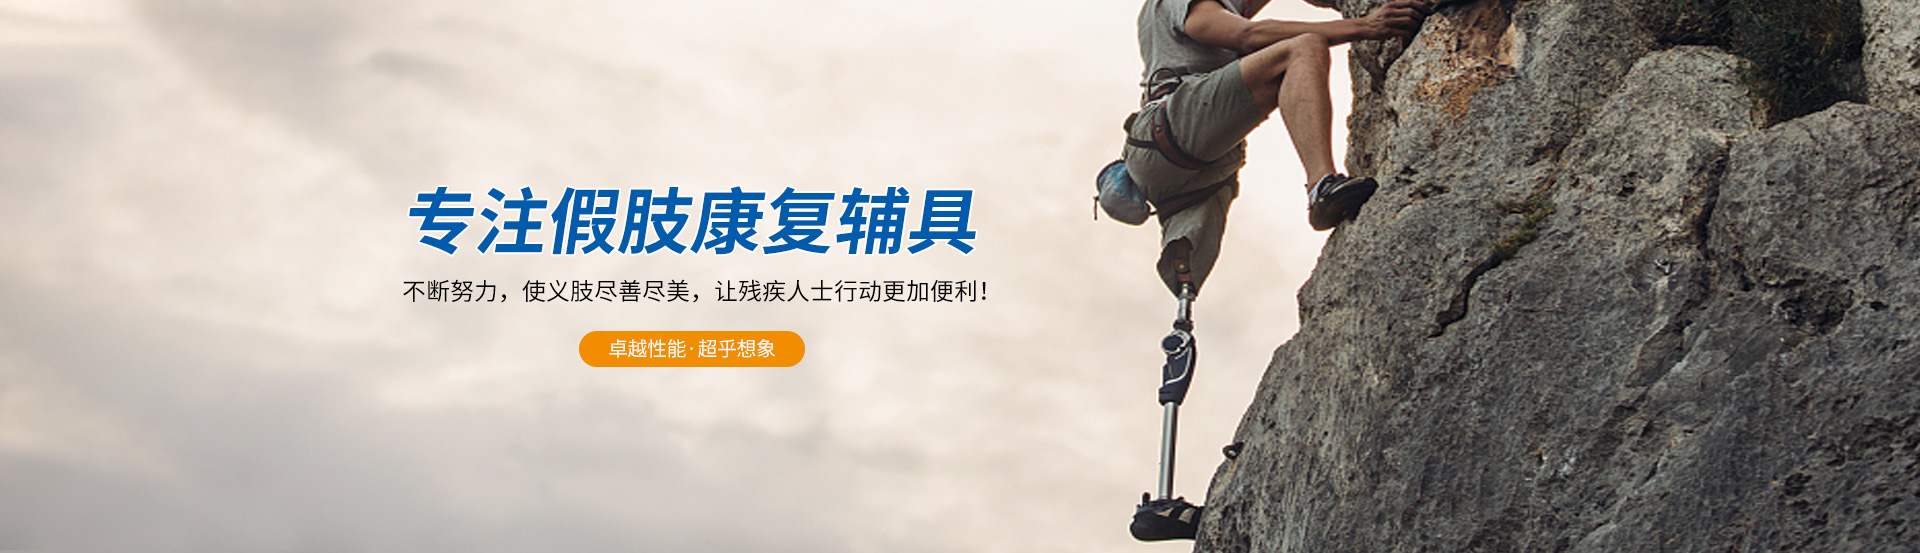 bwin·必赢(中国)唯一官方网站_产品1627